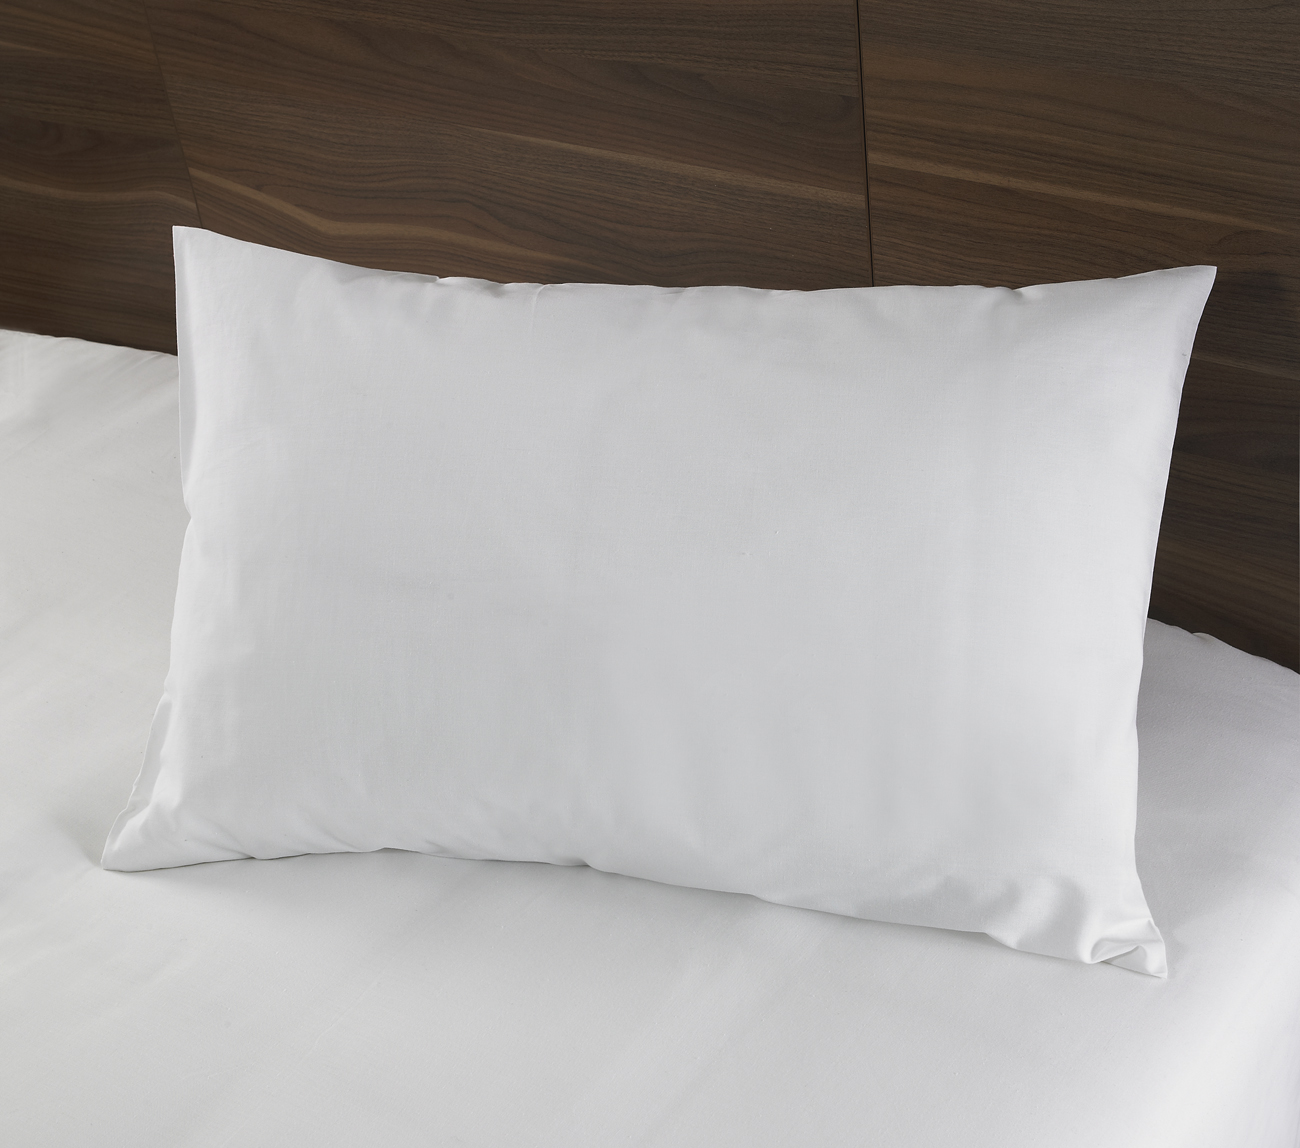 Protège oreiller hôtellerie, nos gammes de protège oreillers pour hôtel